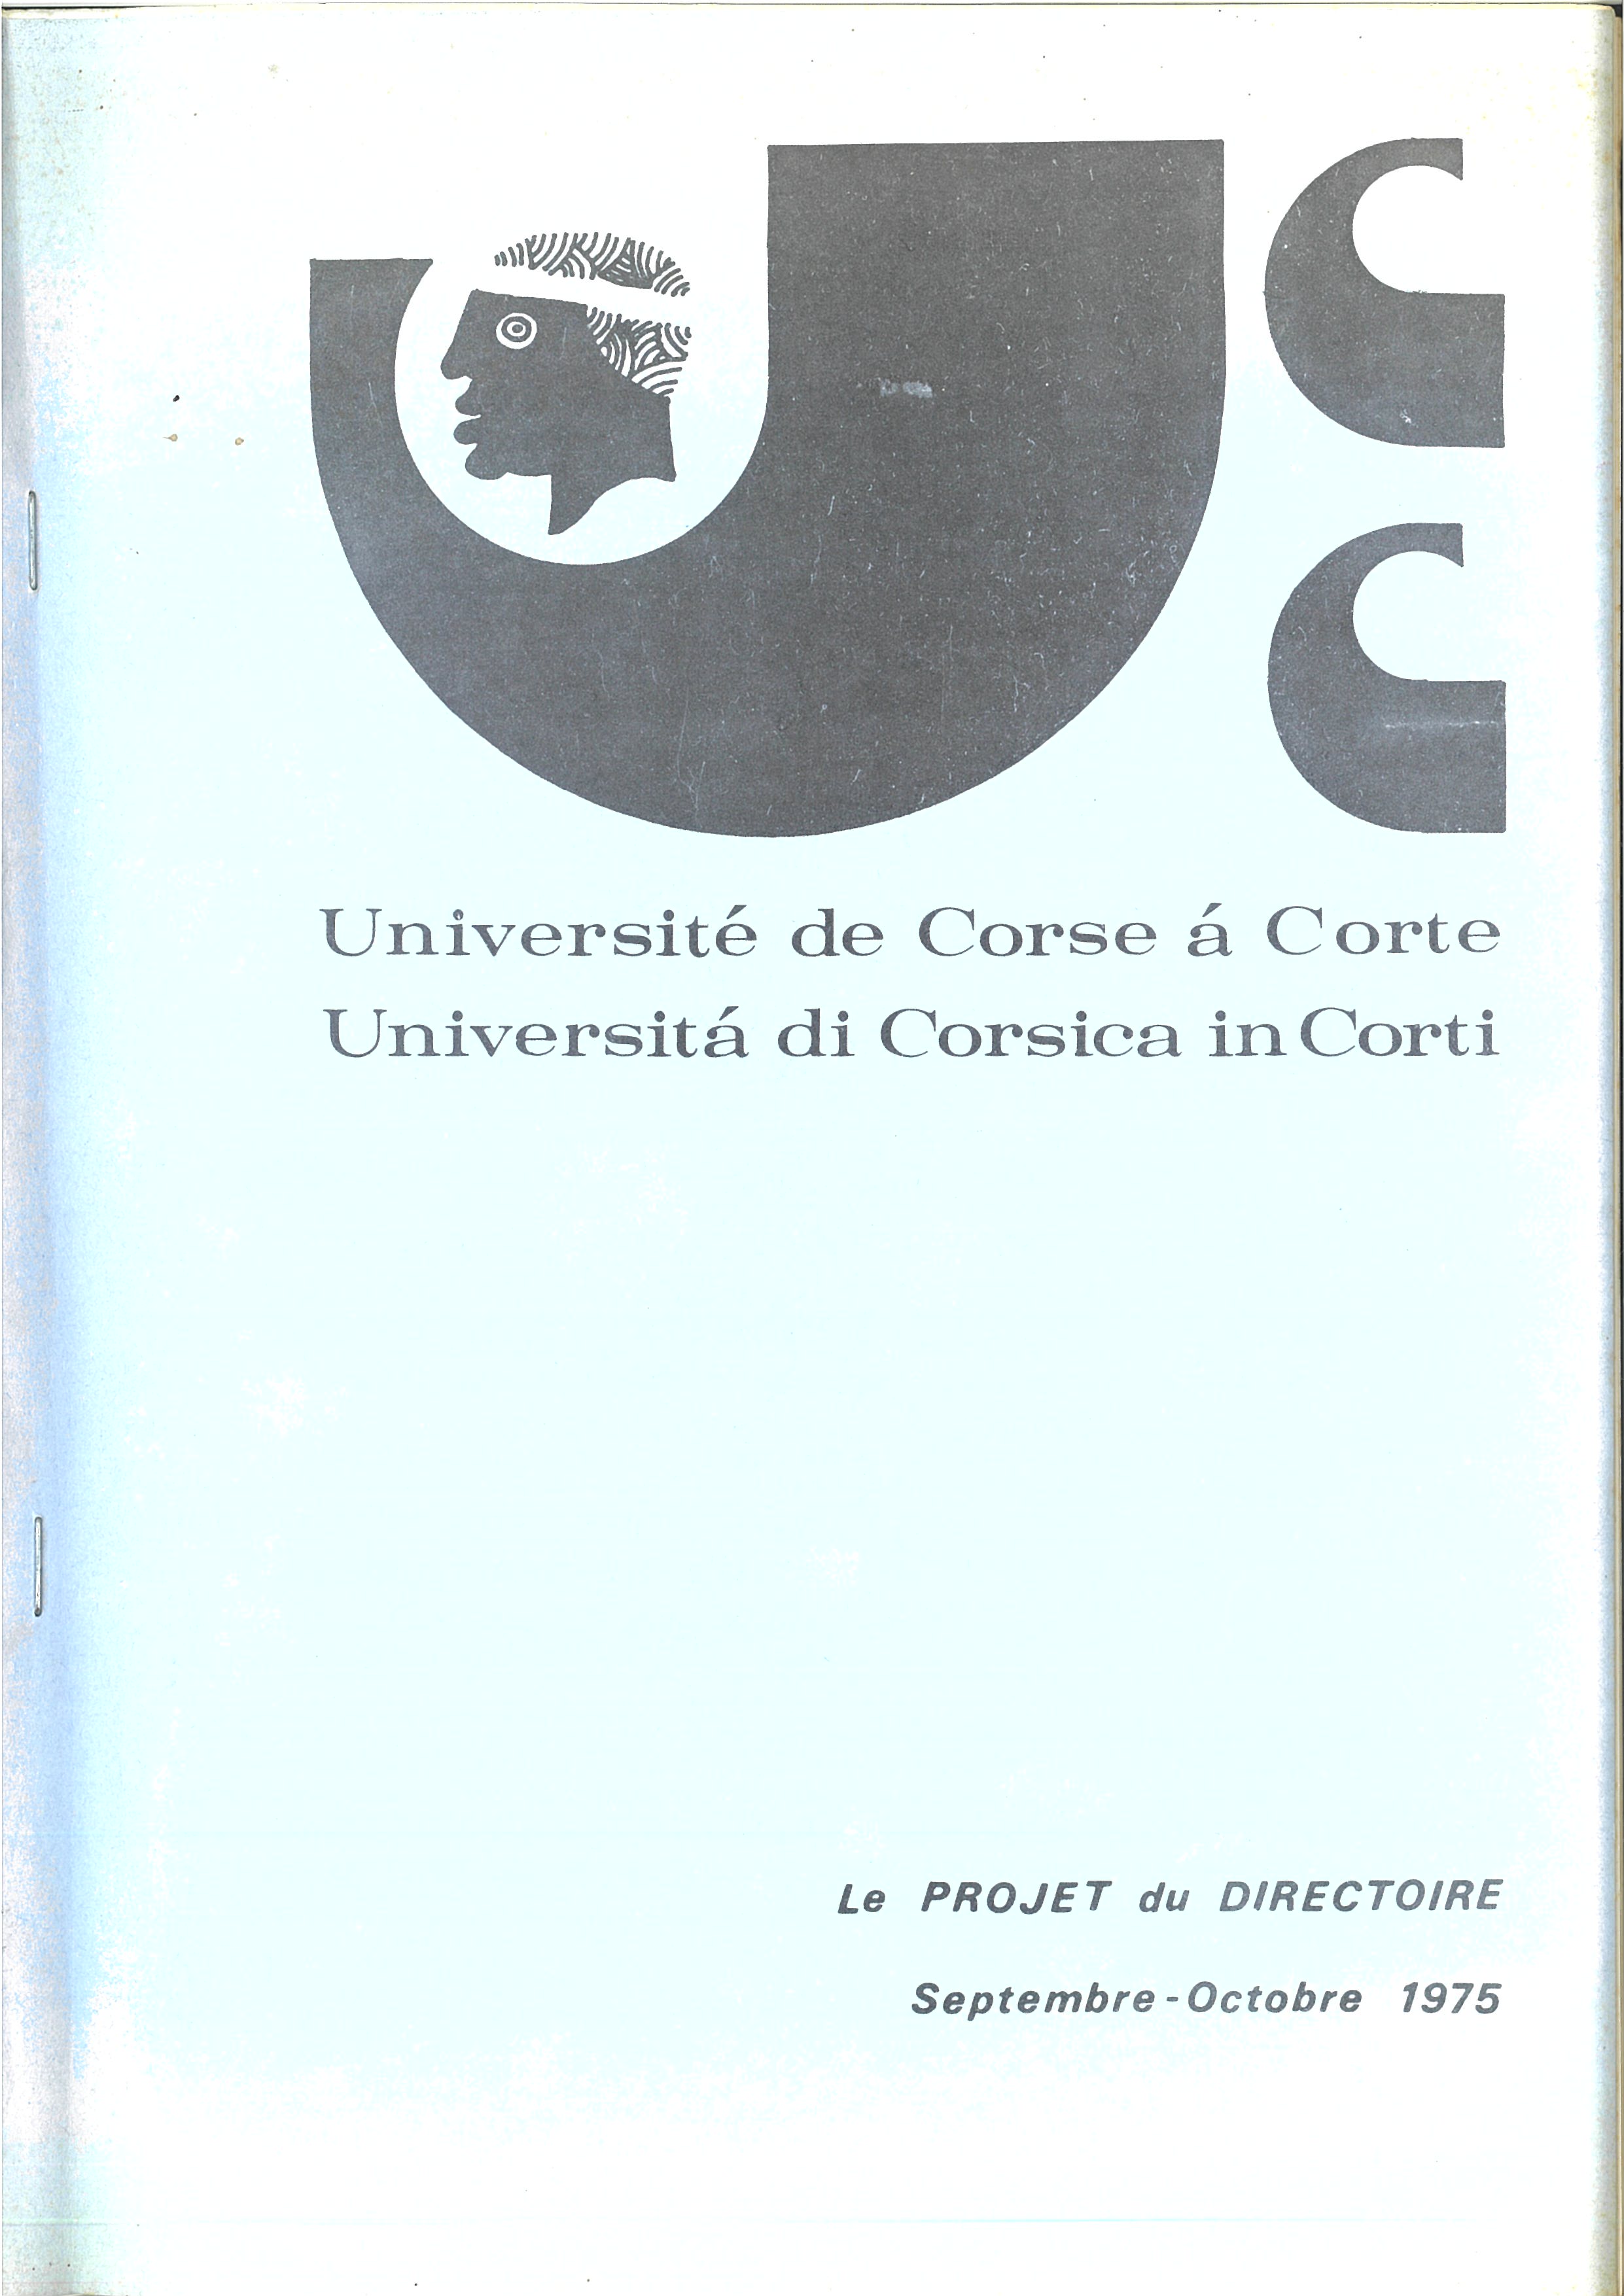 Le projet du directoire de l'Université de Corse - 1975